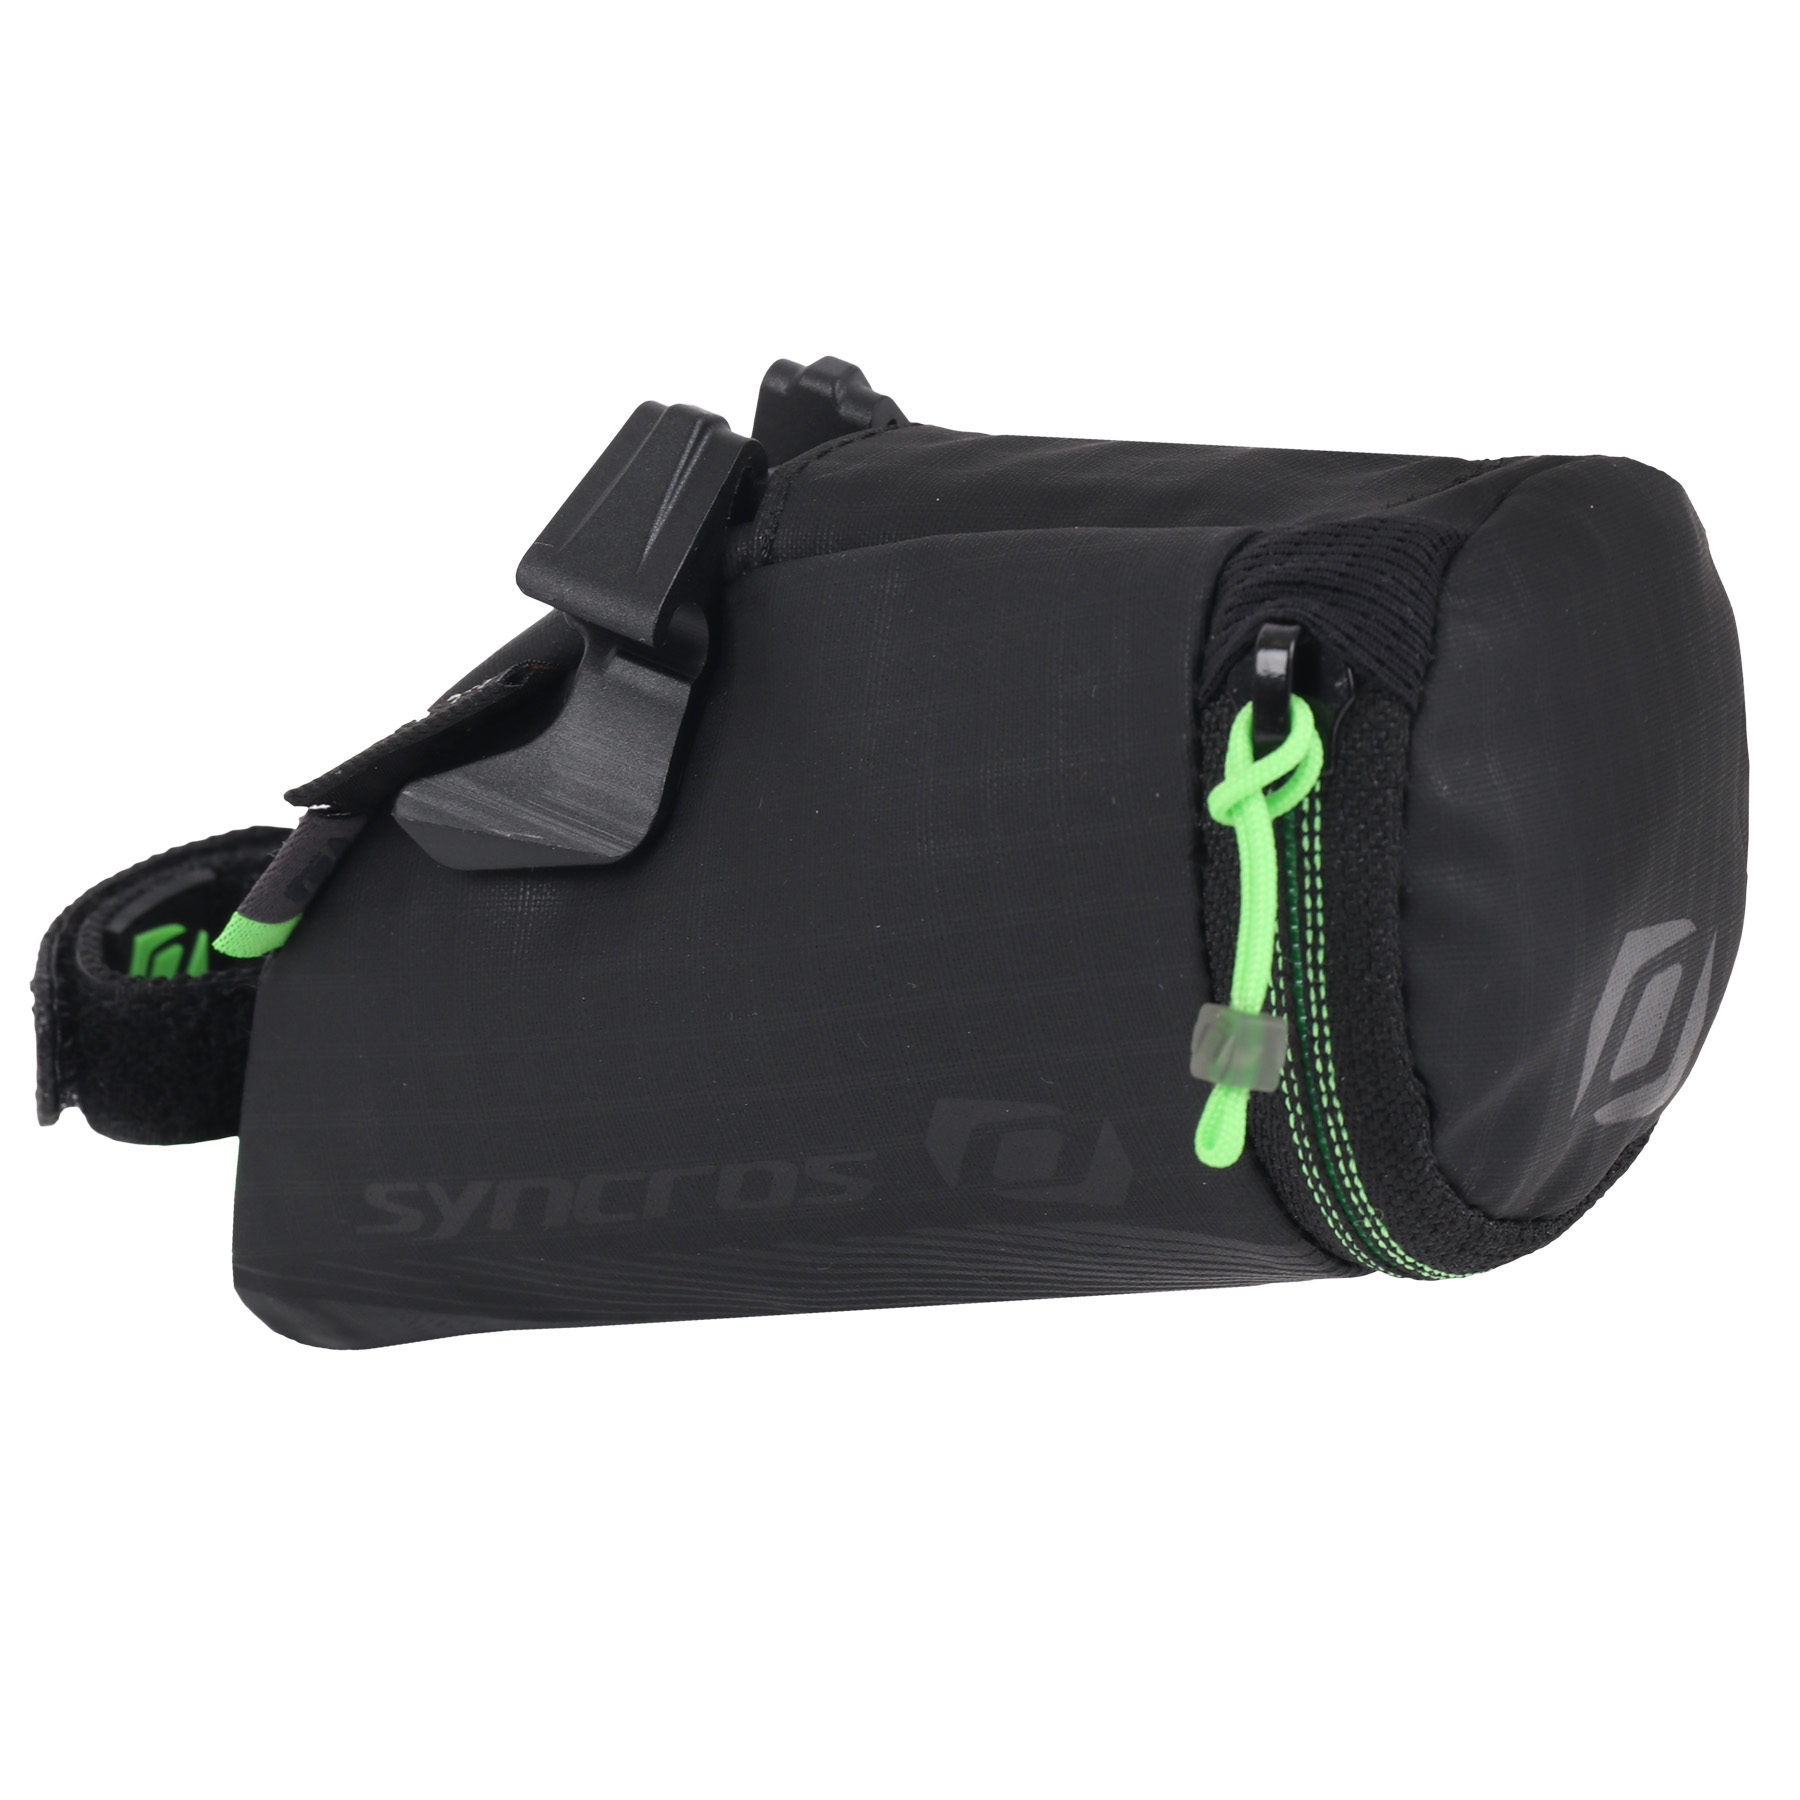 Produktbild von Syncros 250 Integrated Satteltasche - schwarz